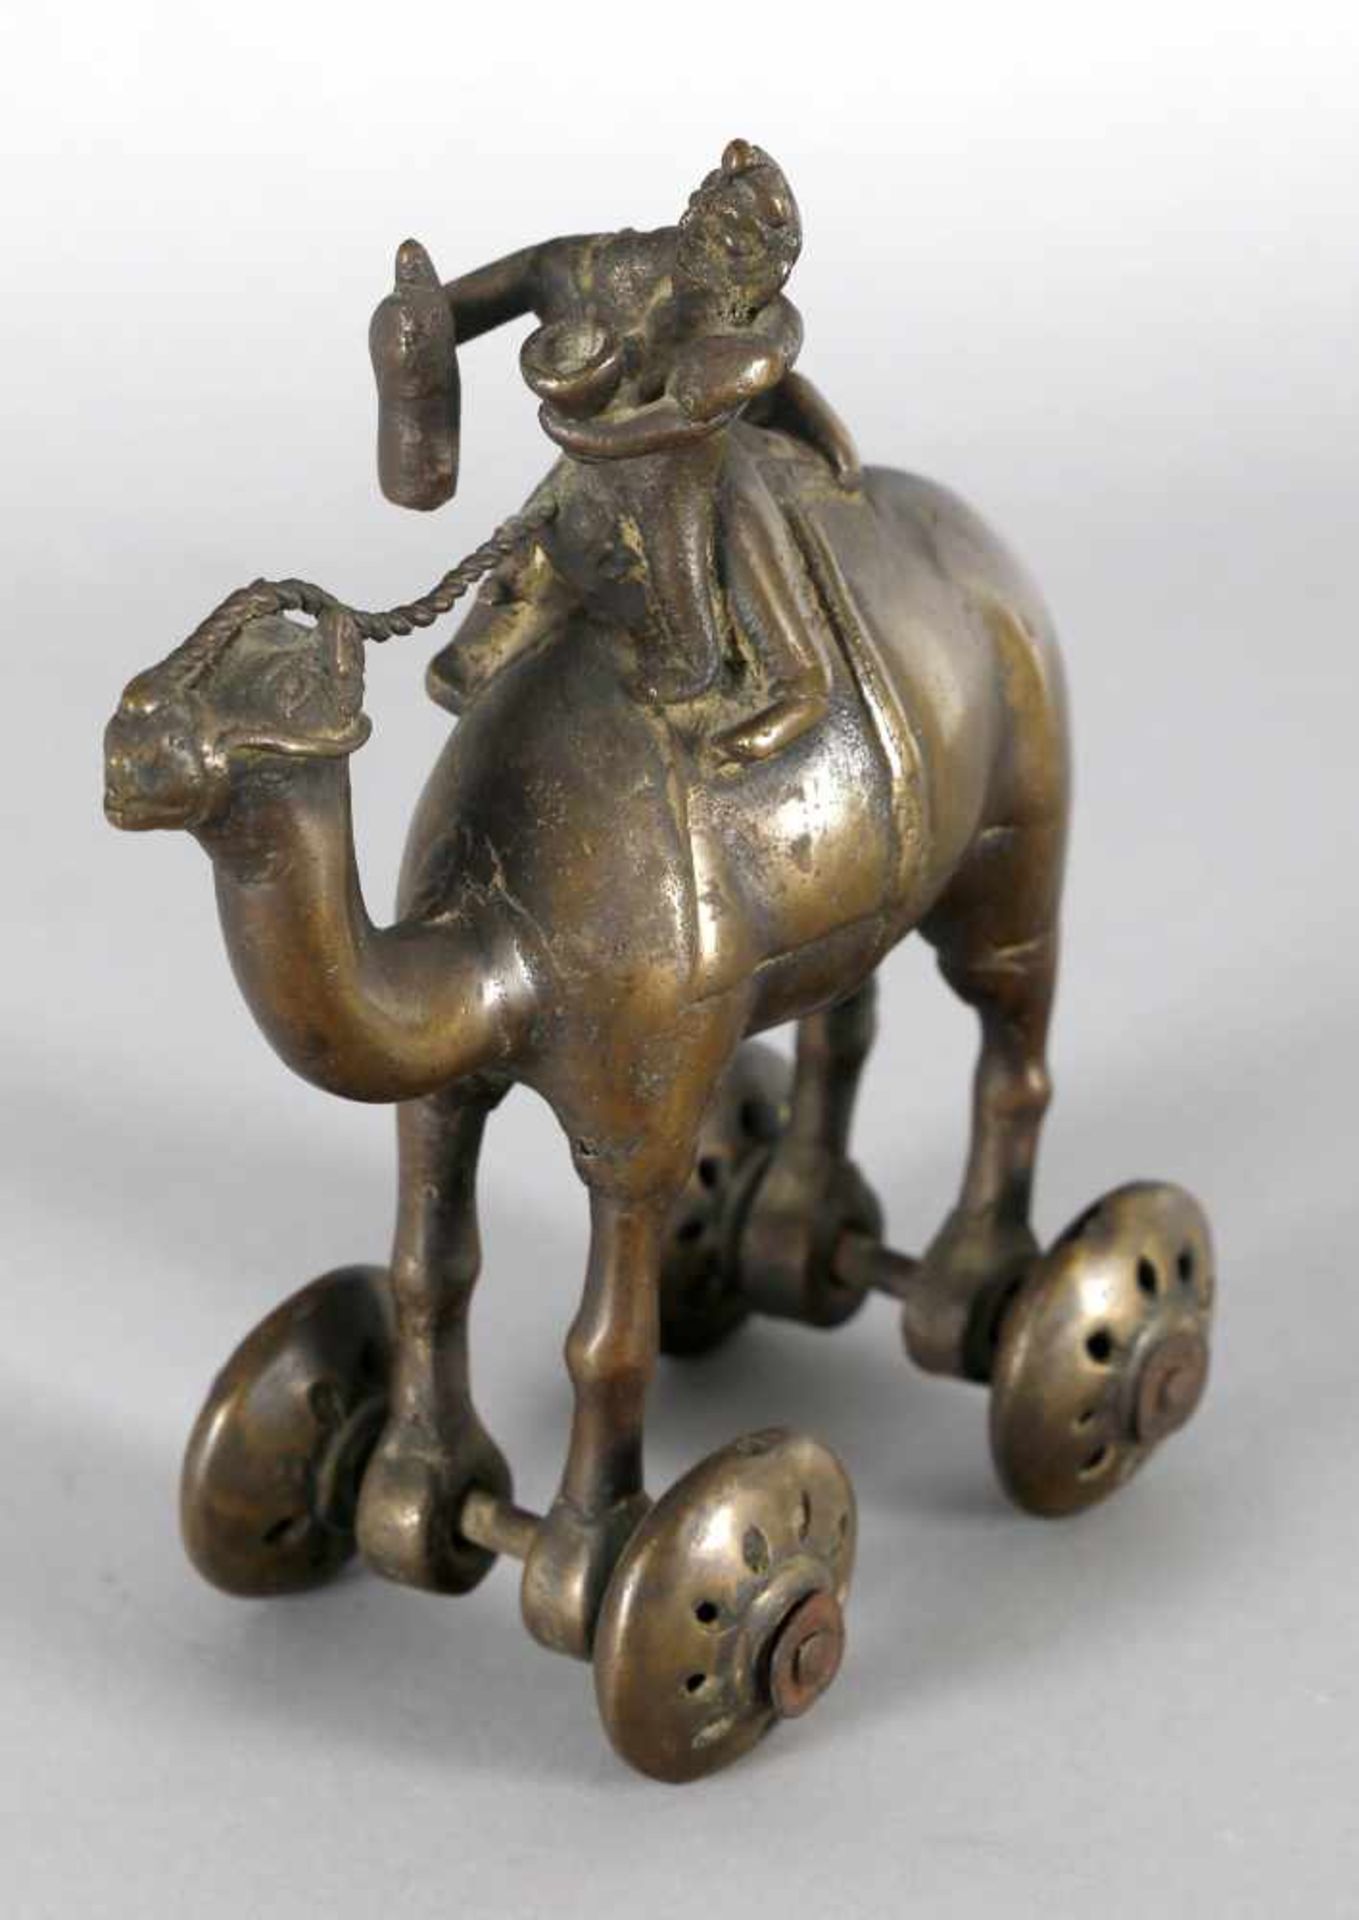 Kamel mit Reiter, Tempelspielzeug für Kinder, Indien, 19./20. Jh.Bronze gegossen, H: 17,3 cm,